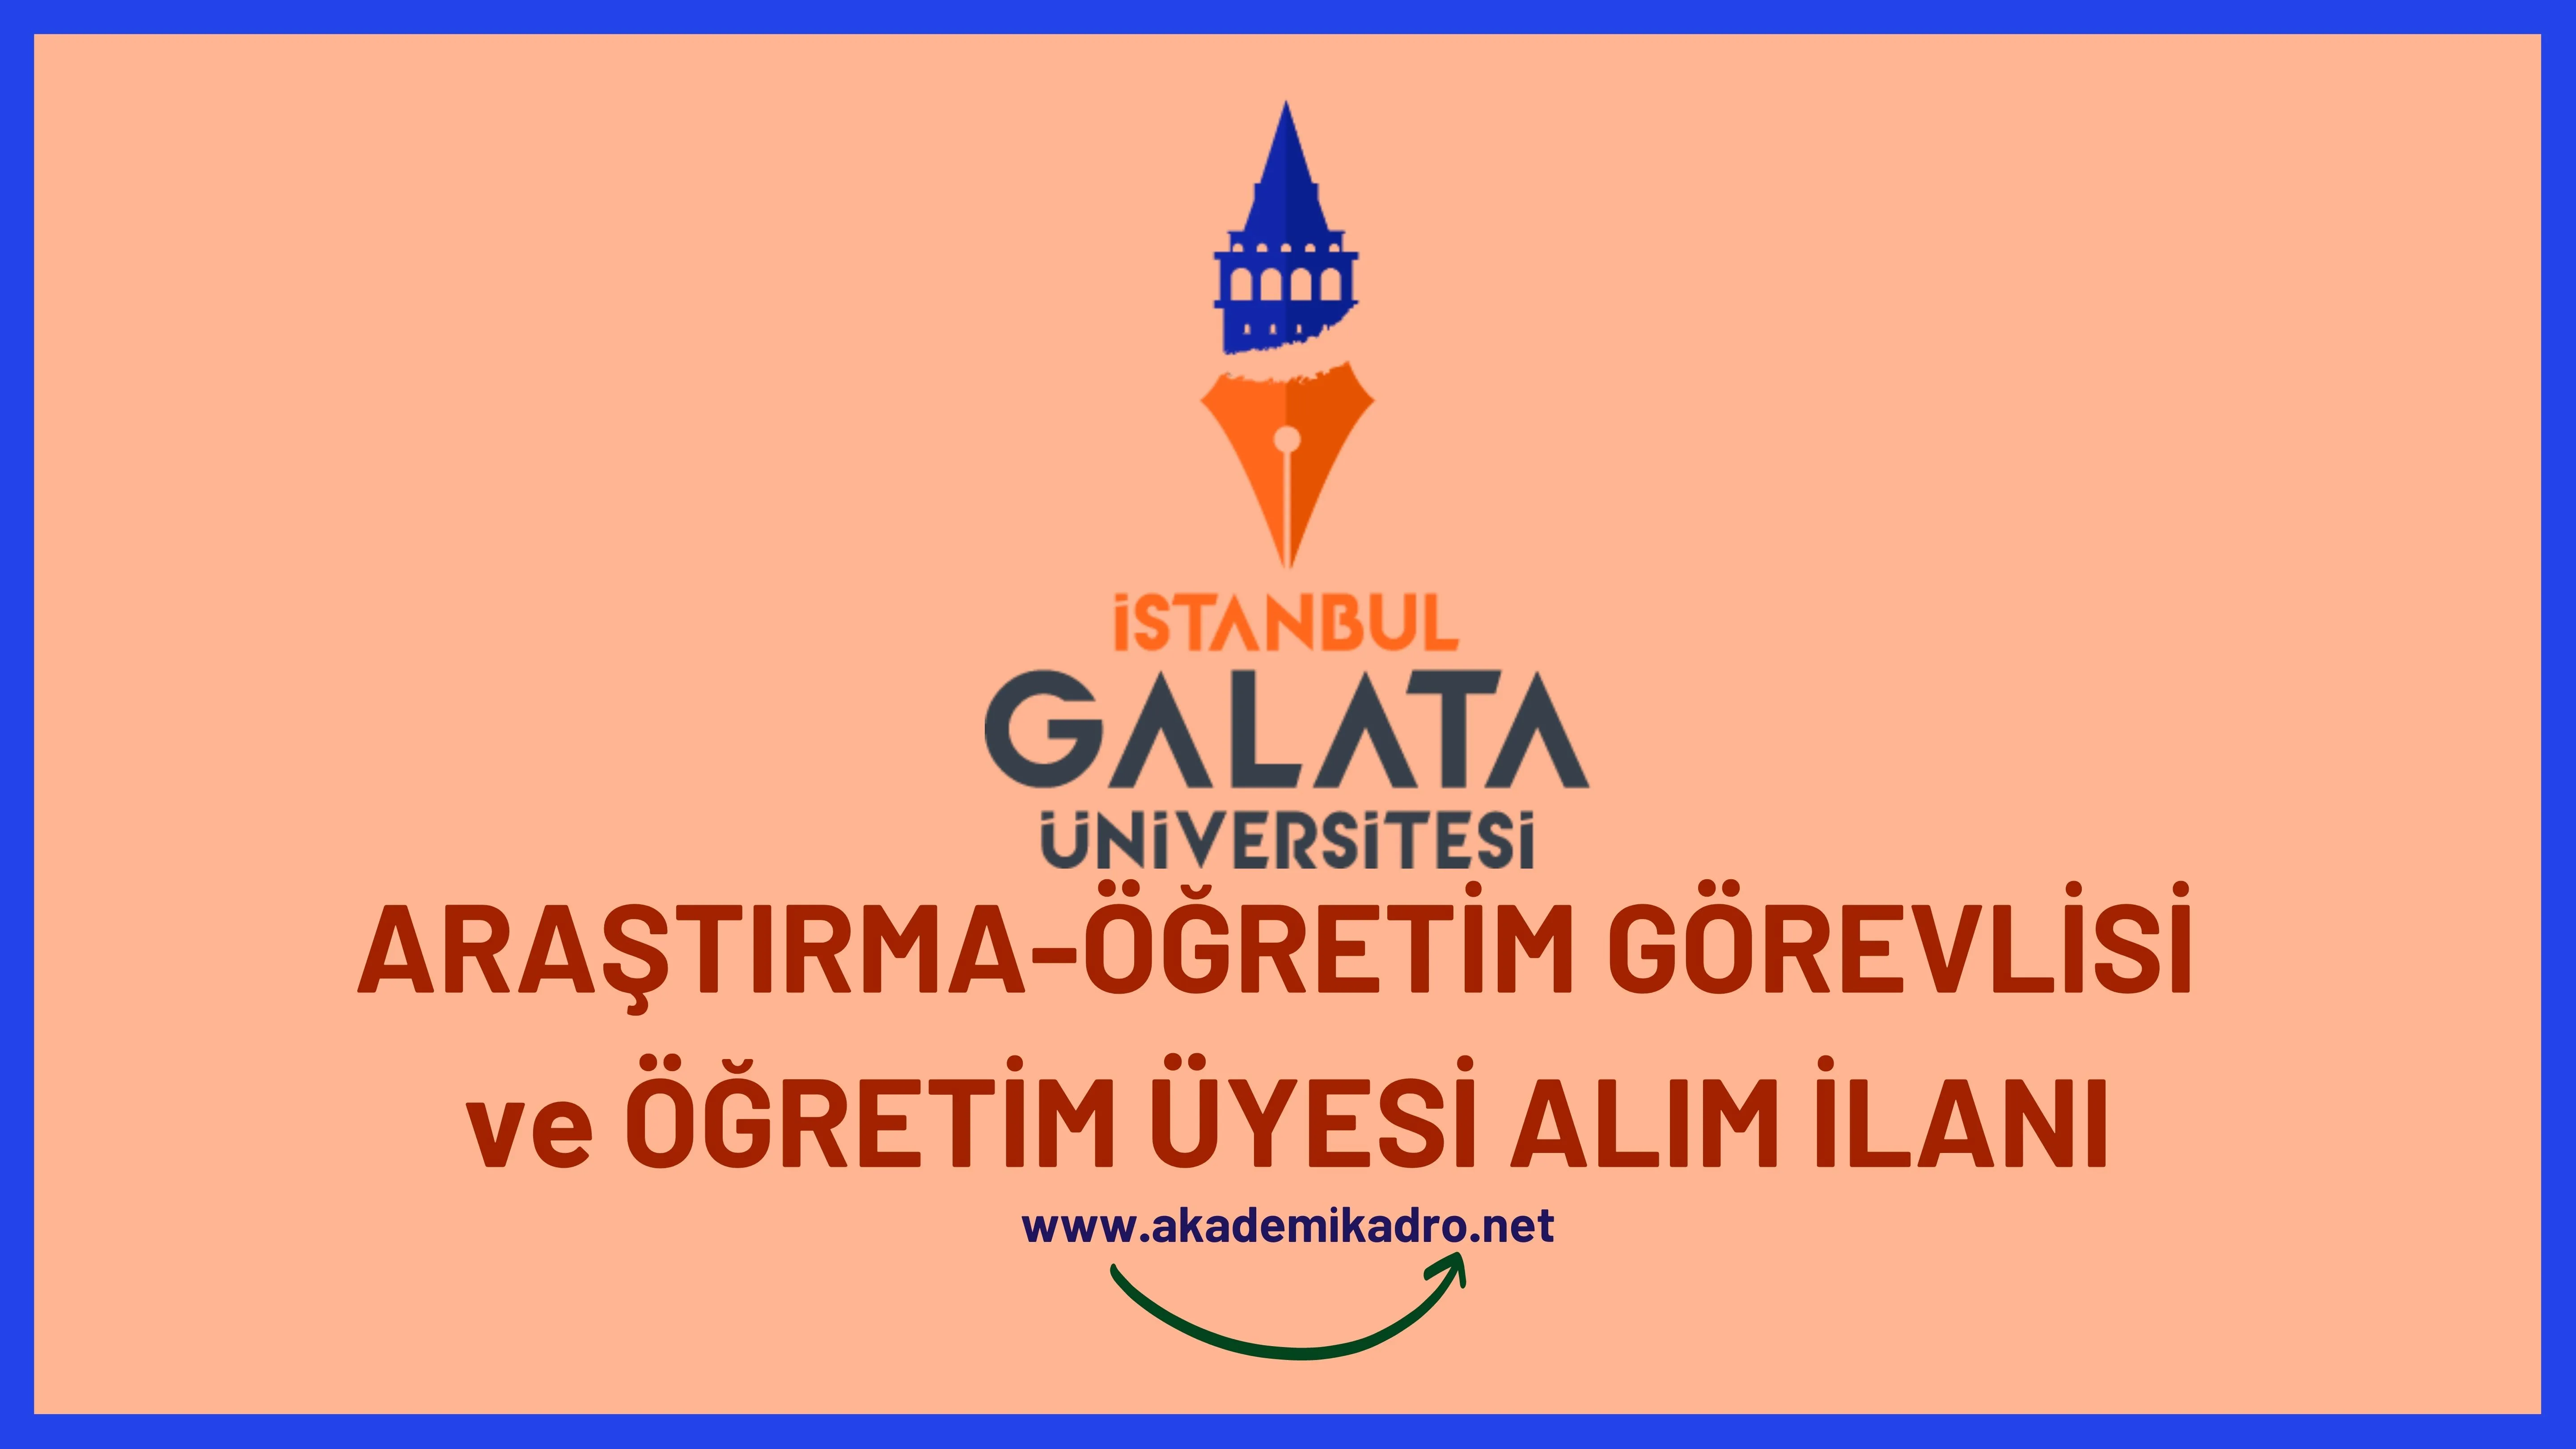 İstanbul Galata Üniversitesi Araştırma Görevlisi, 3 Öğretim görevlisi ve birçok alandan 22 Öğretim üyesi alacak.